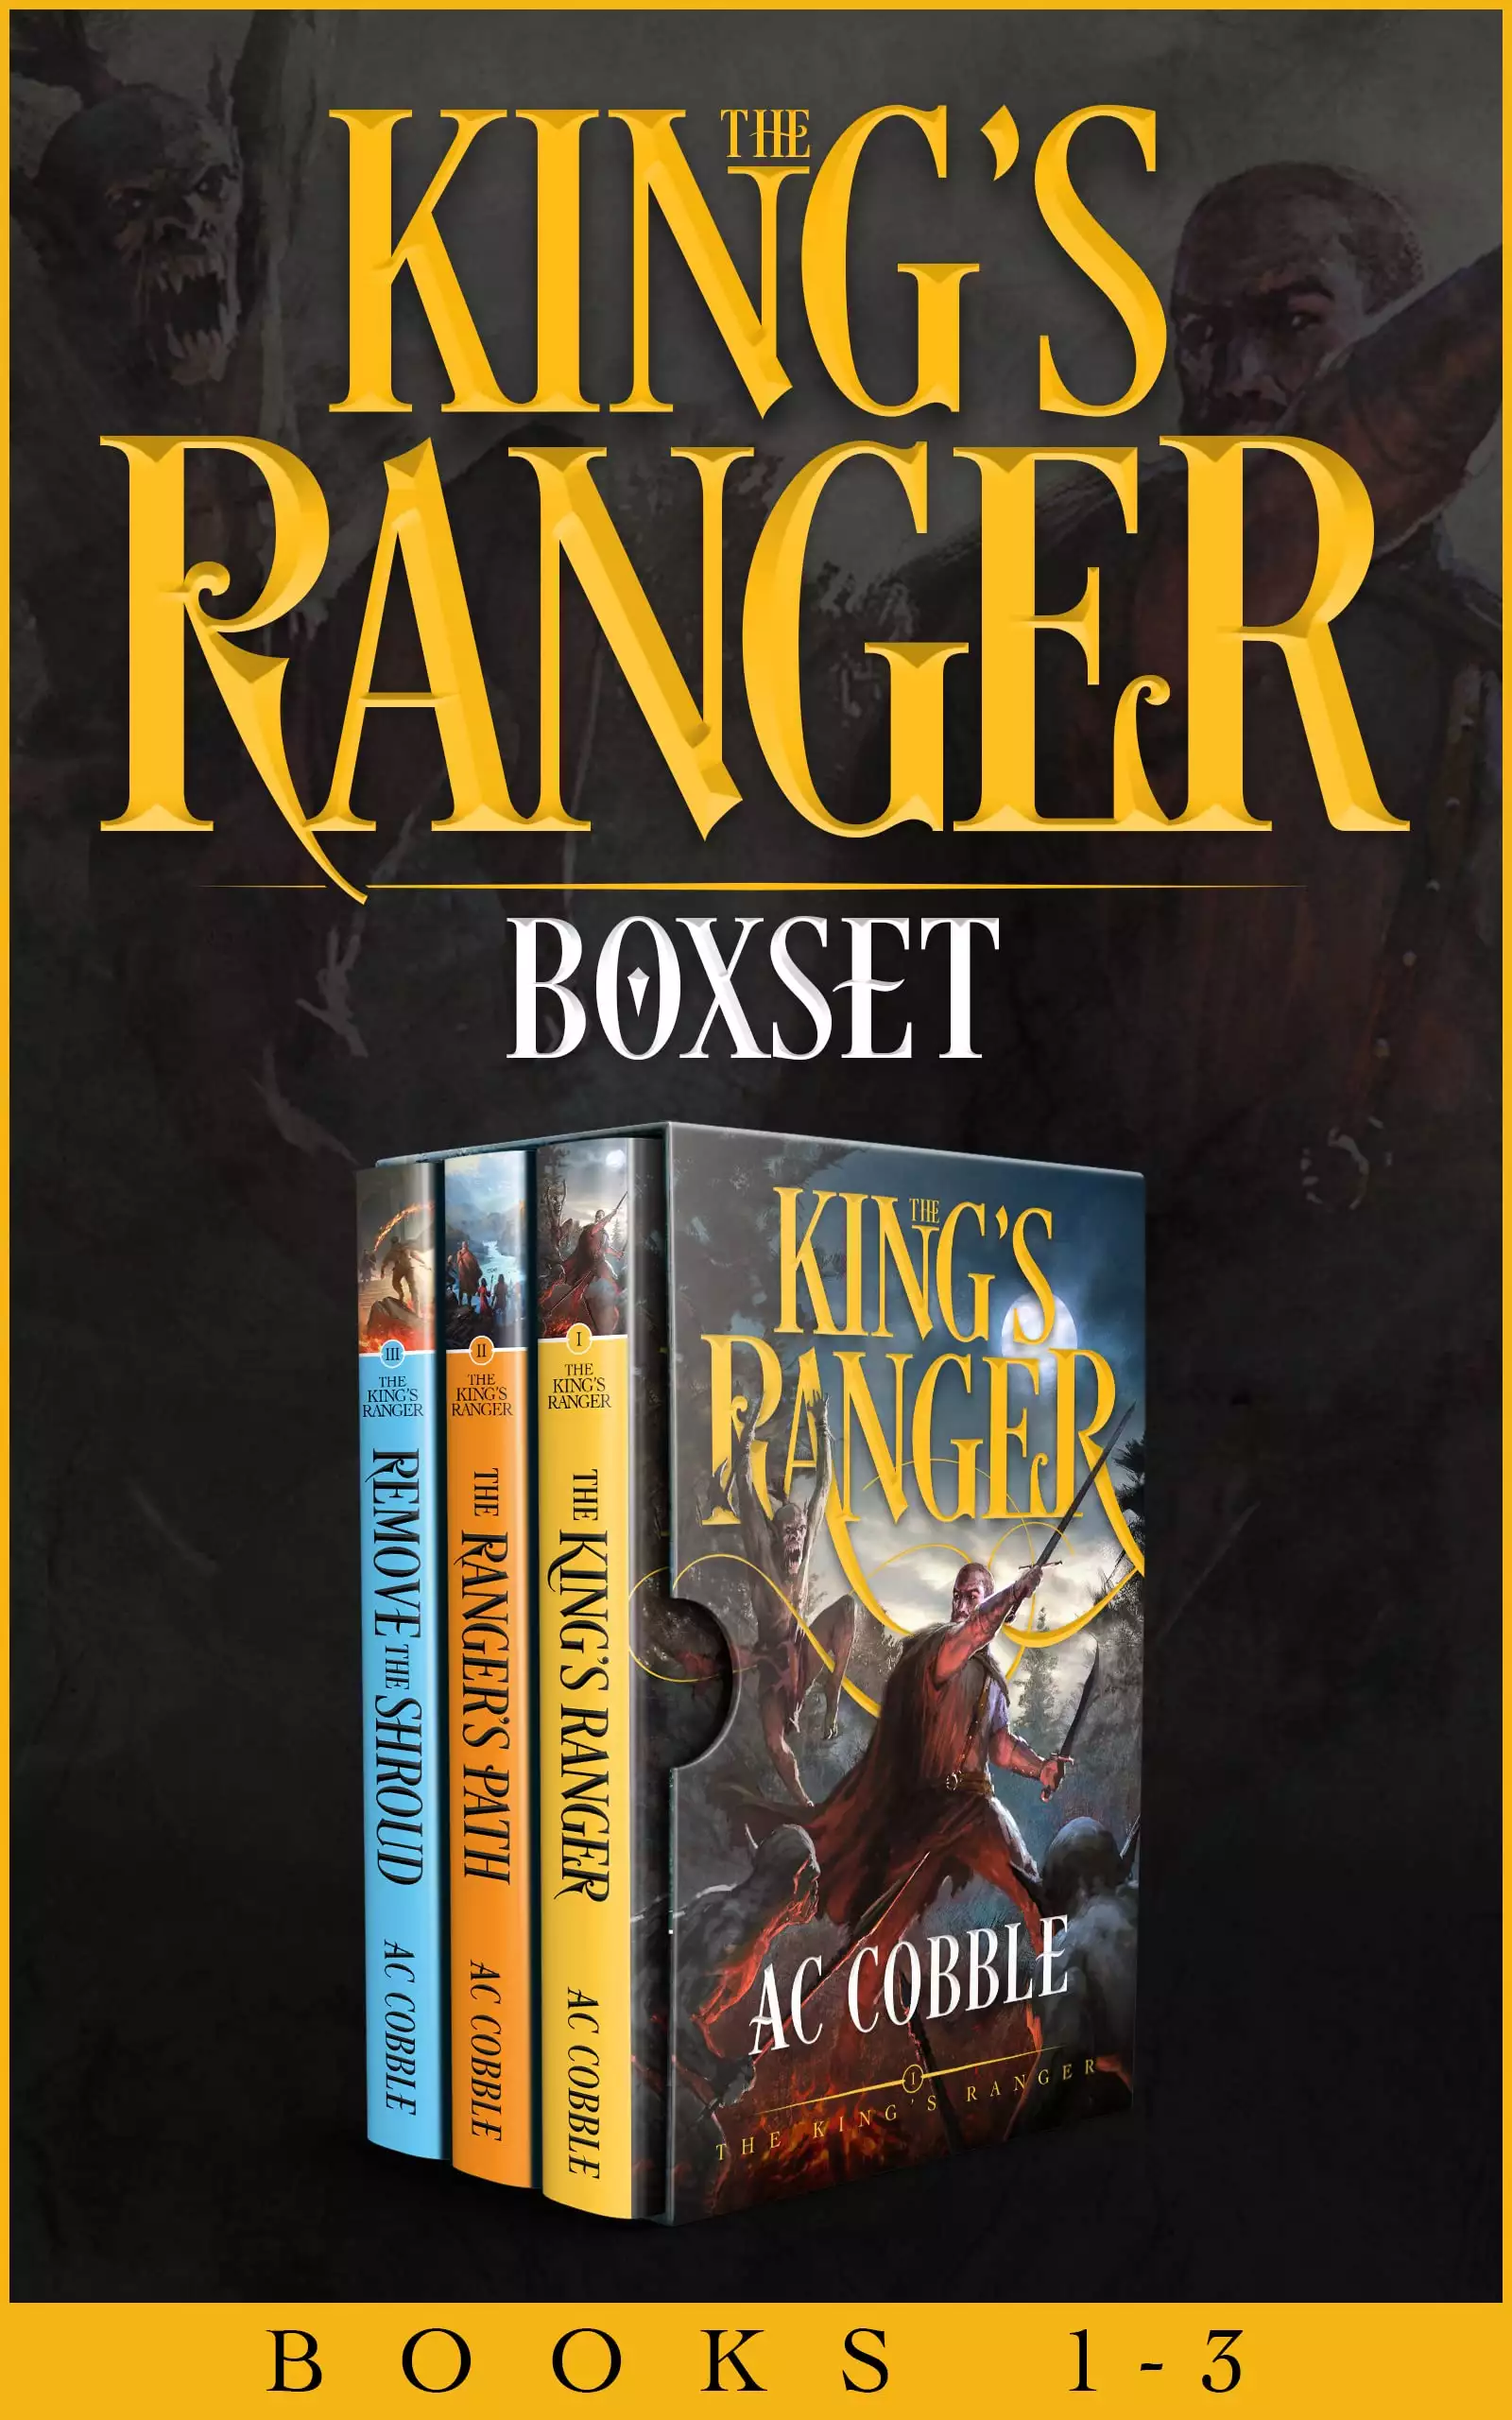 The King's Ranger Boxset: Books 1-3